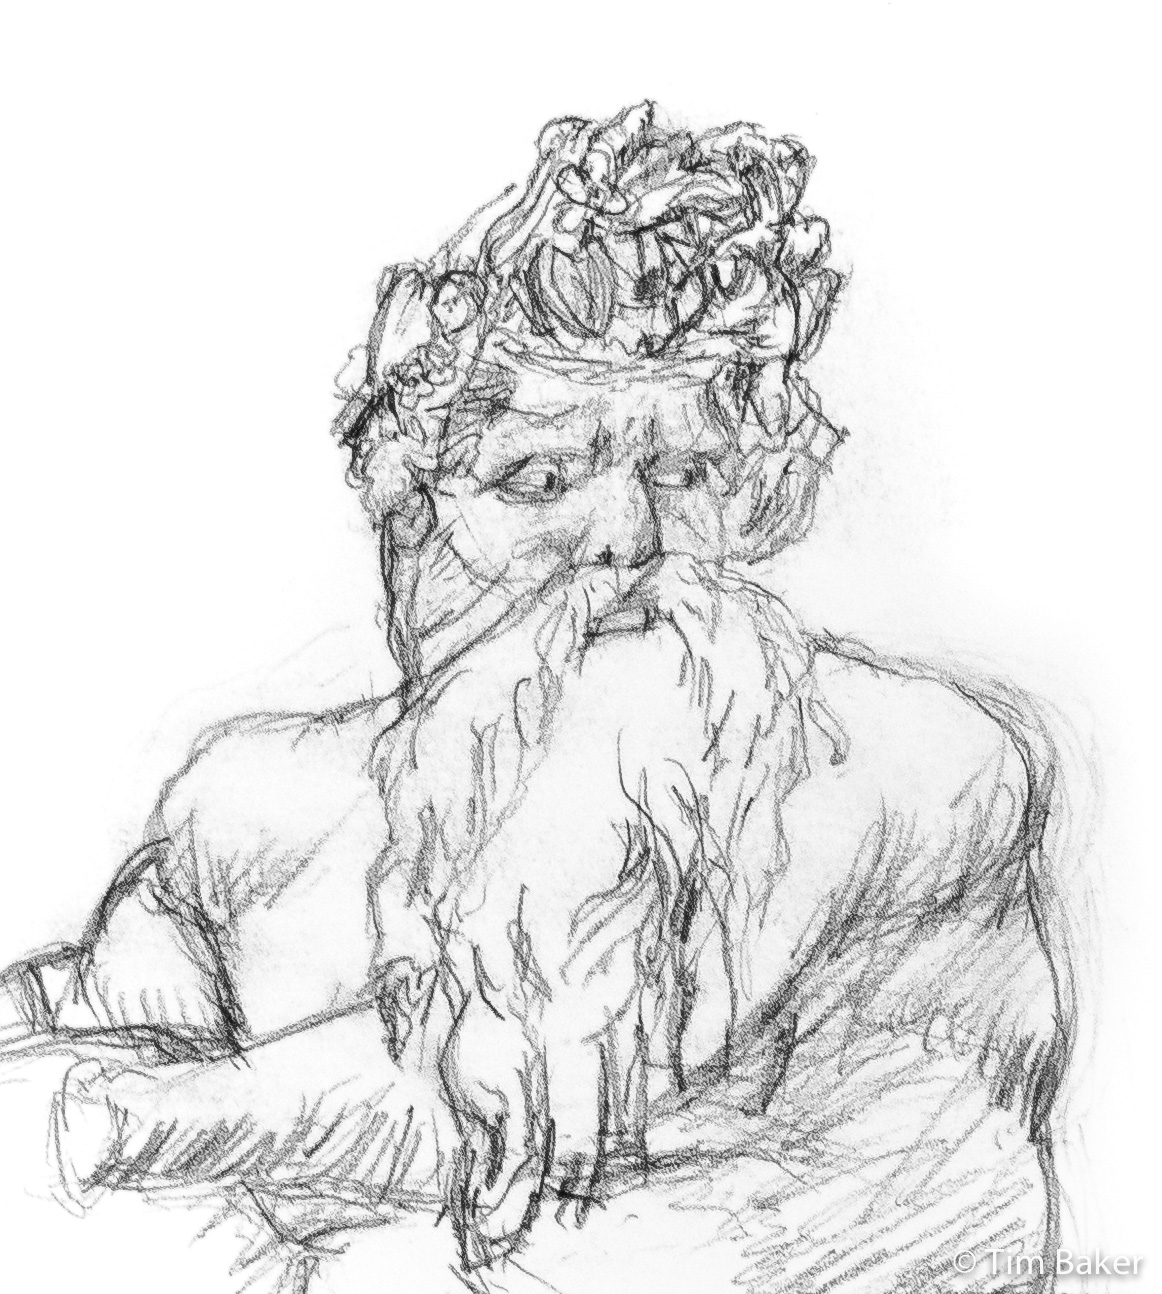 River God #4 (detail), Carbon Pencil on A3 watercolour paper